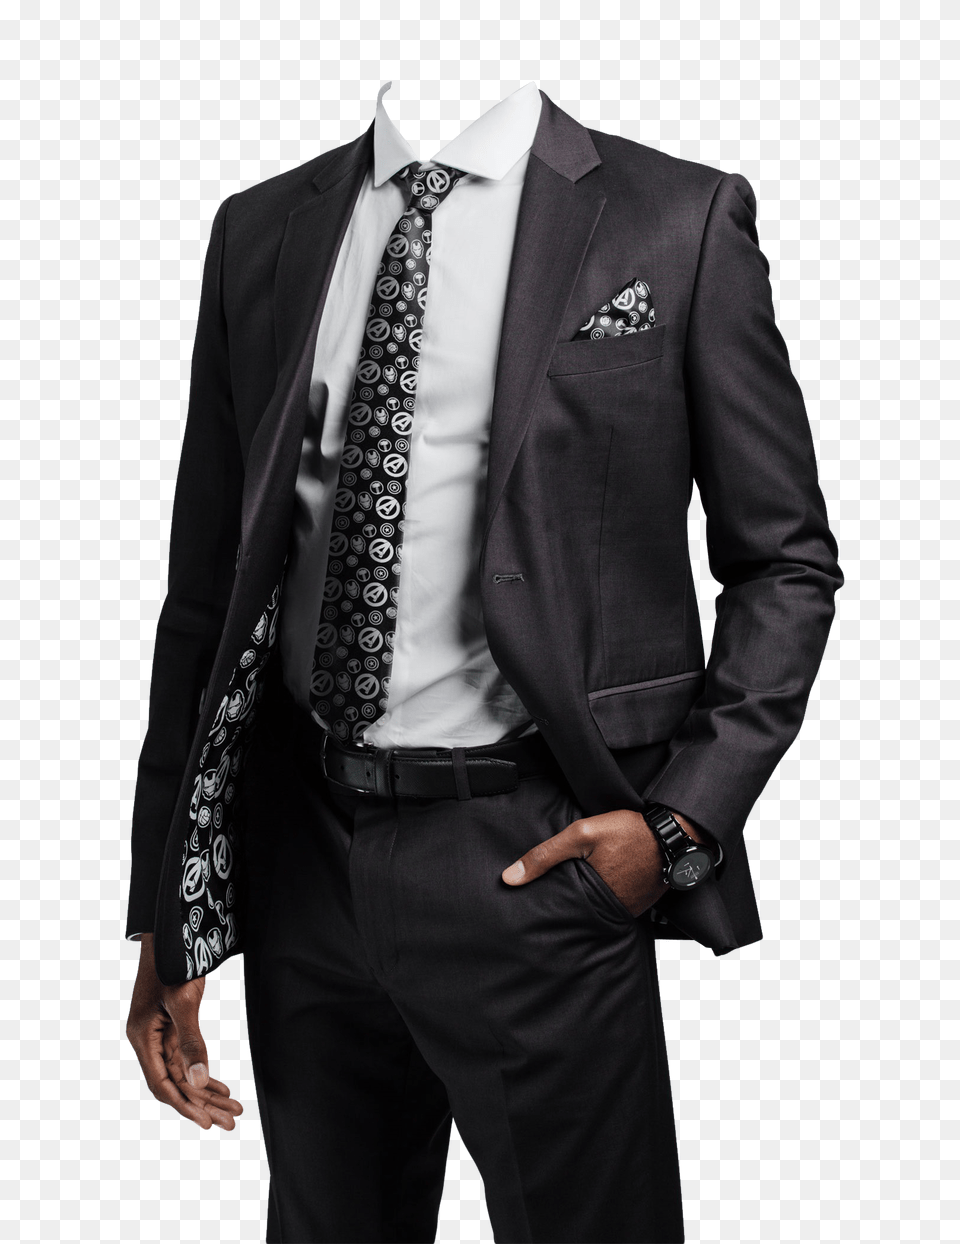 Pngpix Com Black Suit Image, Accessories, Tie, Jacket, Formal Wear Free Png